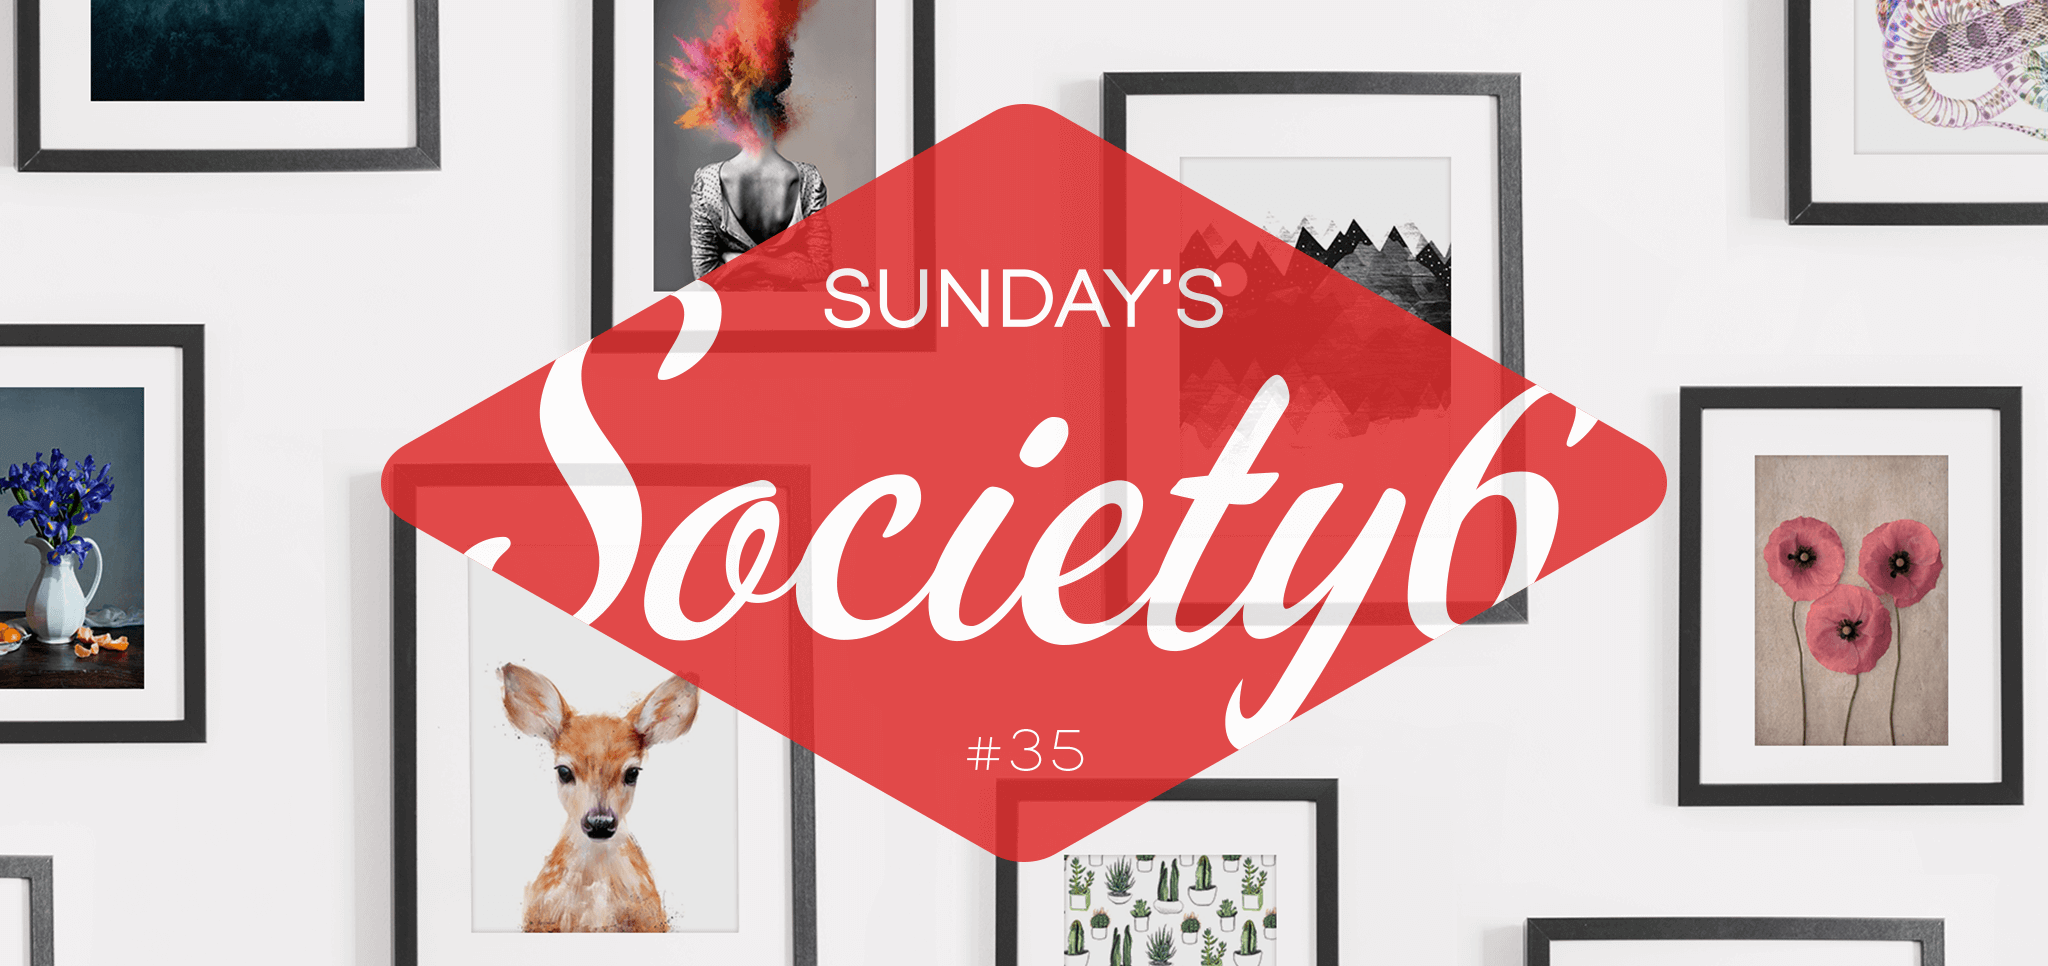 Sunday’s Society6 #35 | Happy holidays